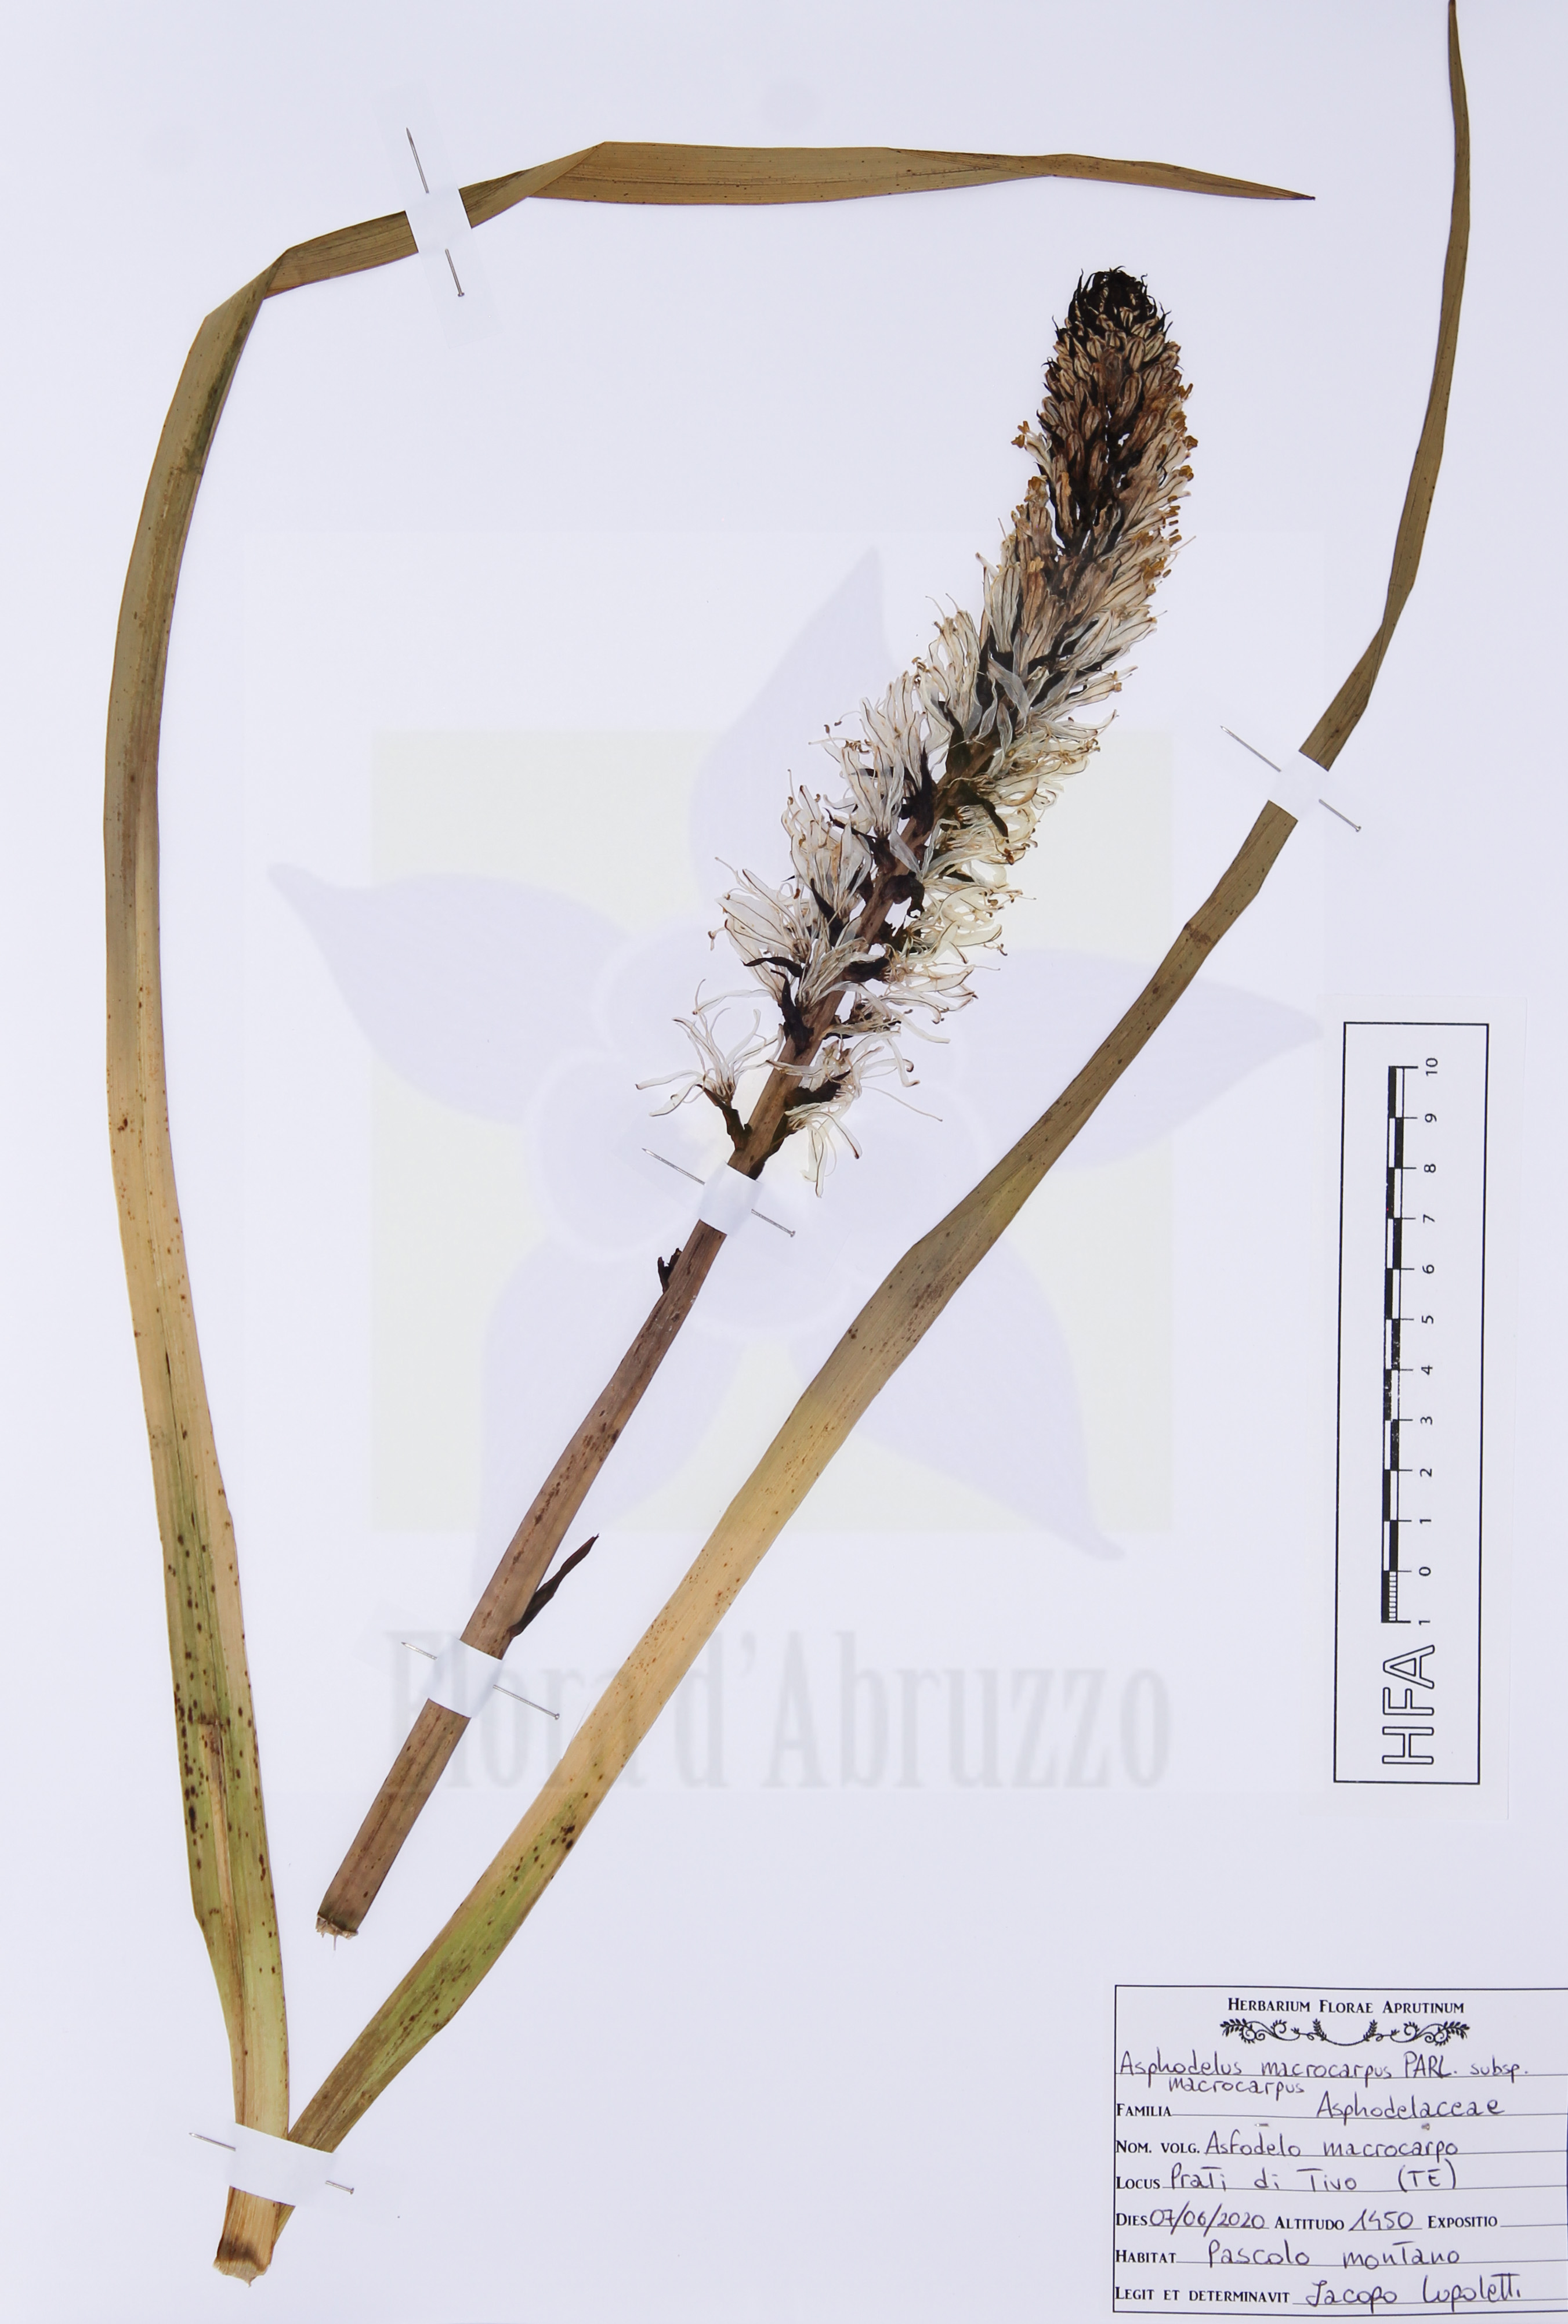 Asphodelus macrocarpus Parl. subsp. macrocarpus